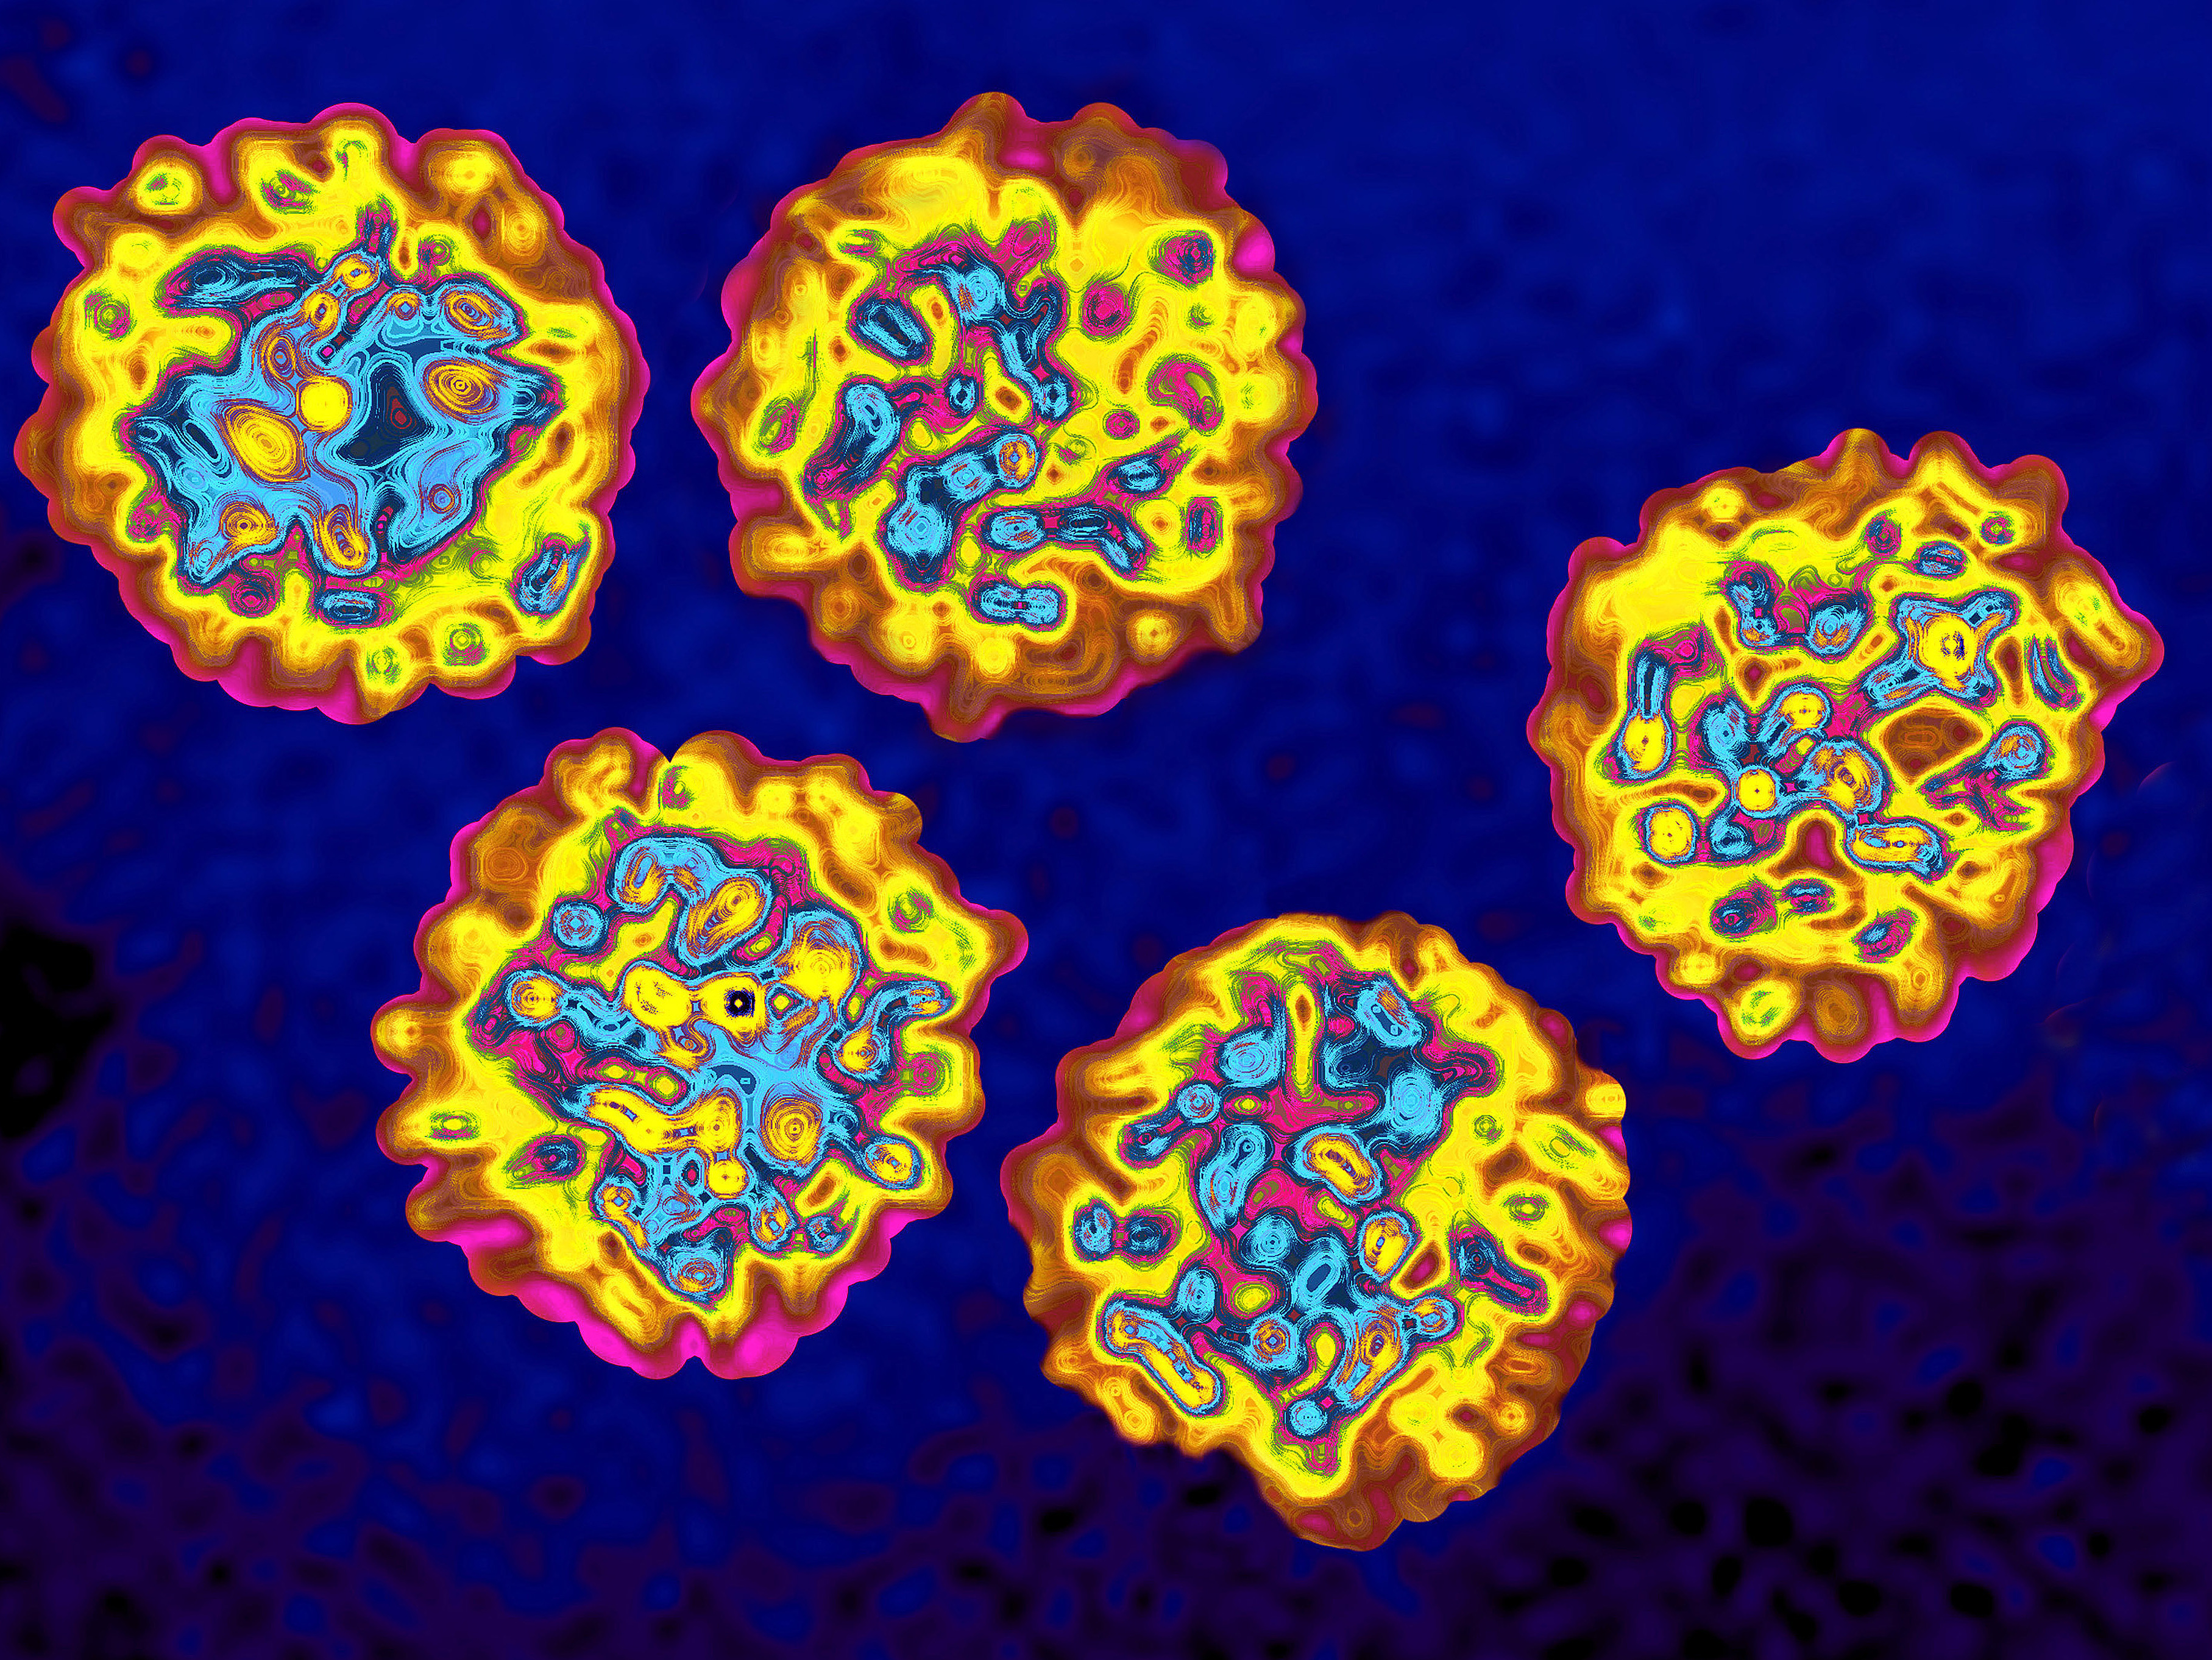 Вирусы вызывающие гепатит. Вирус гепатита под микроскопом. Вирус гепатита b под микроскопом. Вирус гепатита б под микроскопом. Вирус гепатита c под микроскопом.